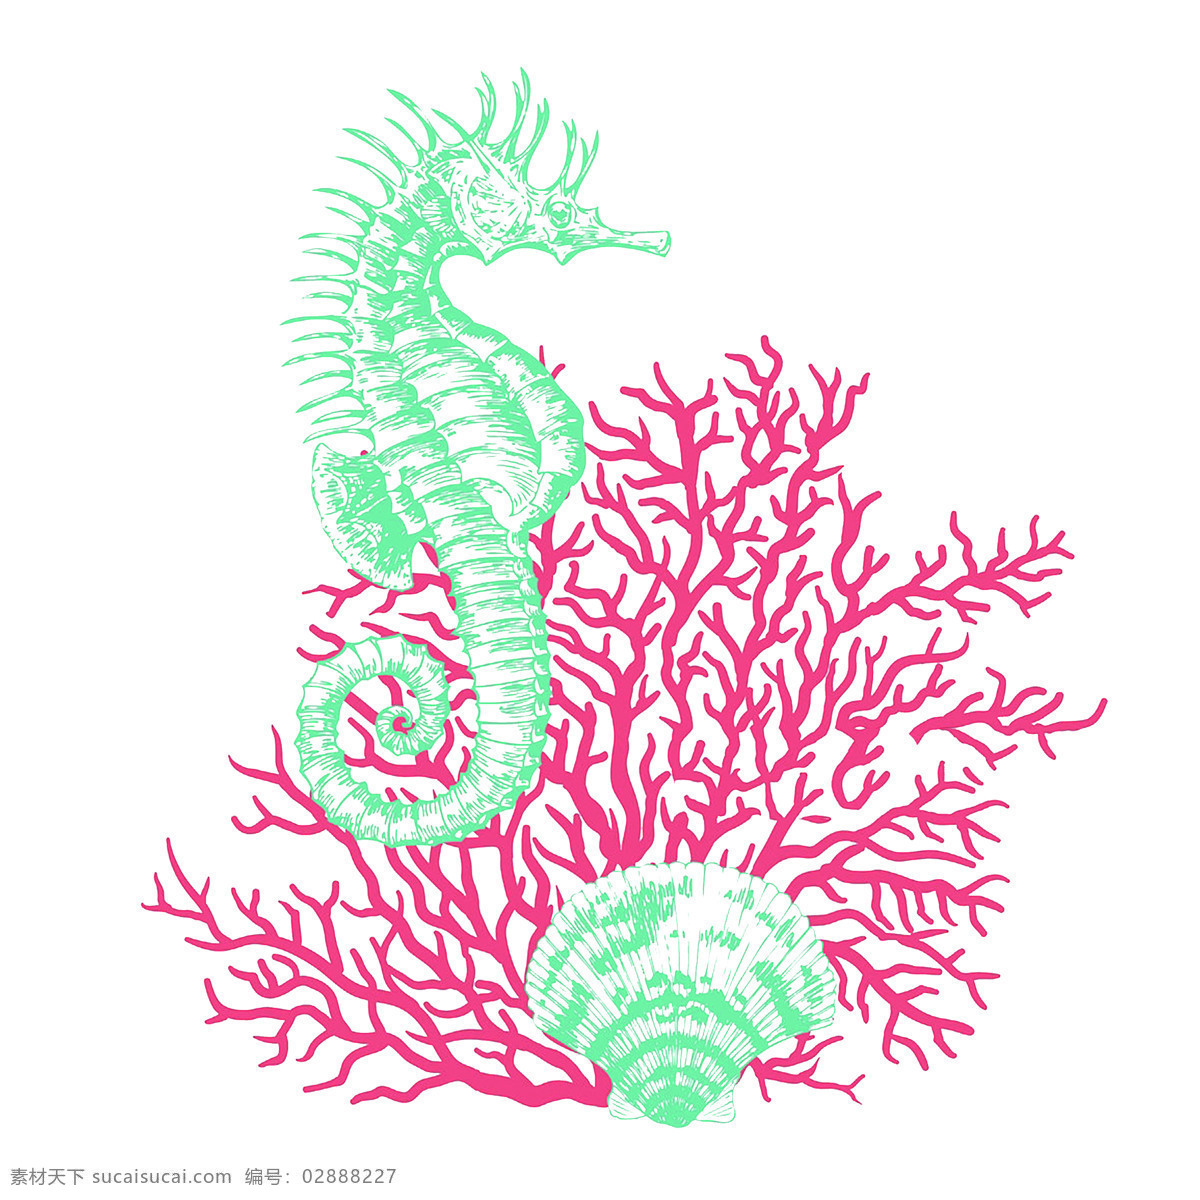 海马和珊瑚 矢量 印花 海马 珊瑚 t恤印花 抱枕印花